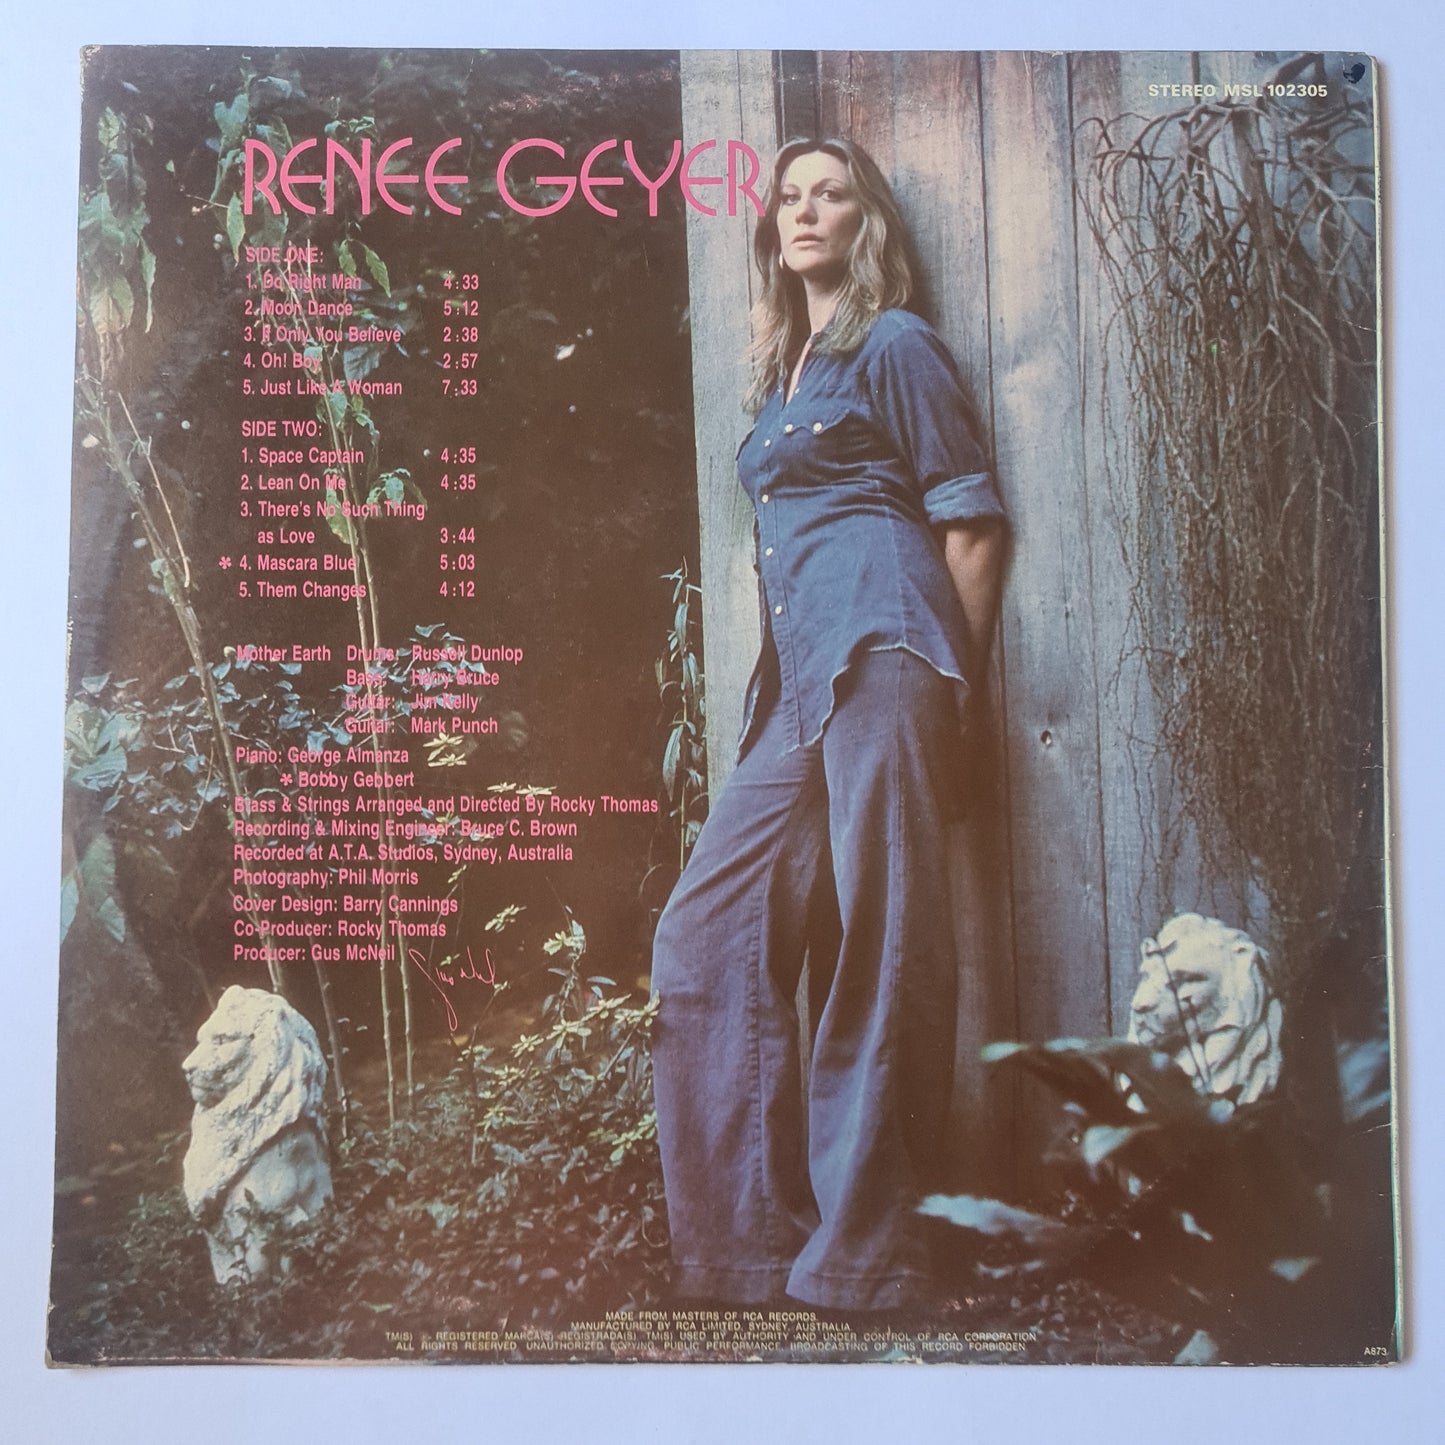 Rene Geyer – Rene Geyer - 1973